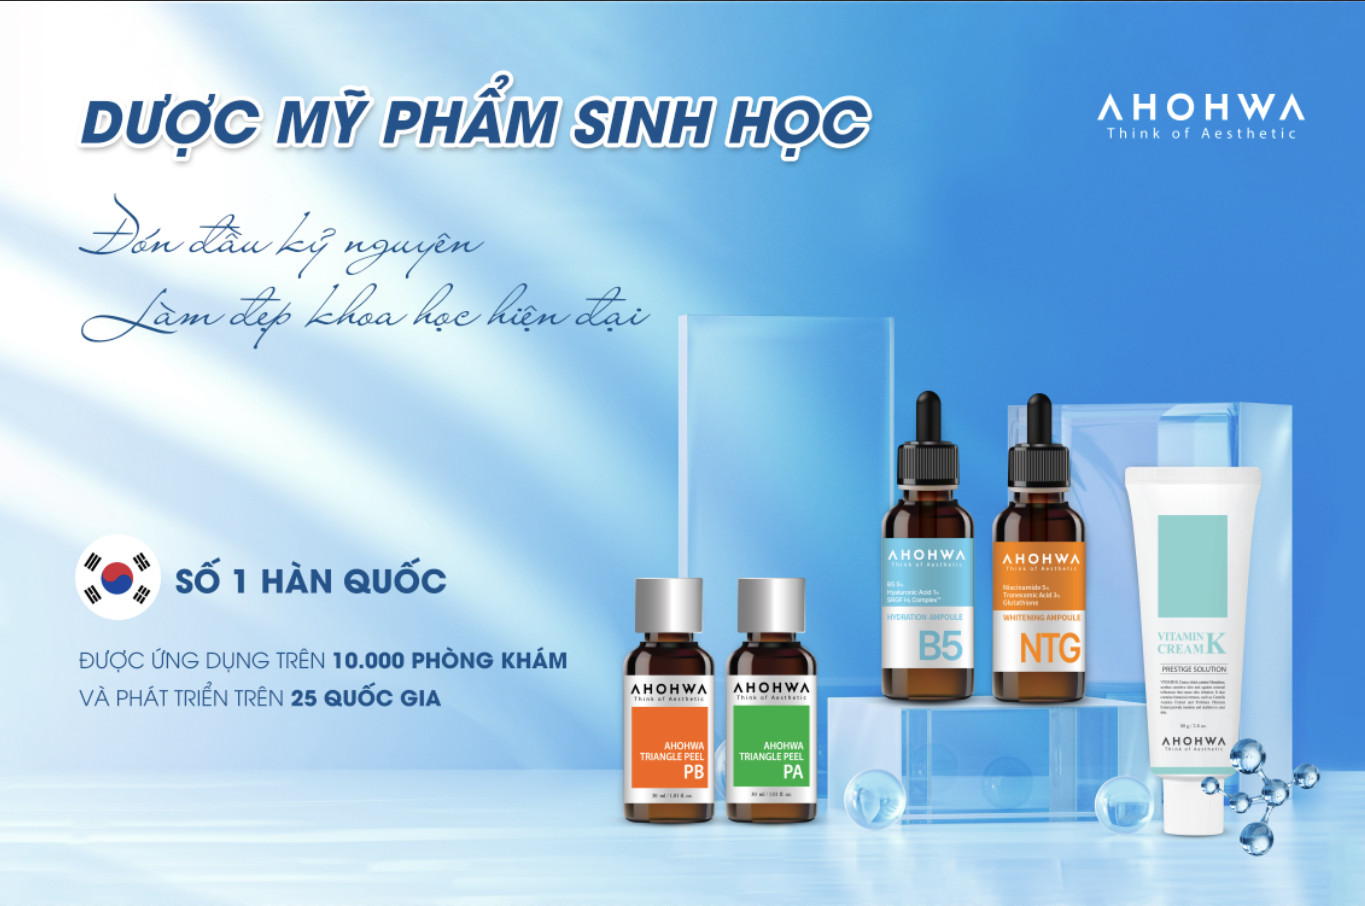 &quot;Vẻ đẹp xứng tầm&quot; - sự kiện khẳng định vị thế của thương hiệu Ahohwa trên thị trường mỹ phẩm thẩm mỹ Việt Nam - Ảnh 5.